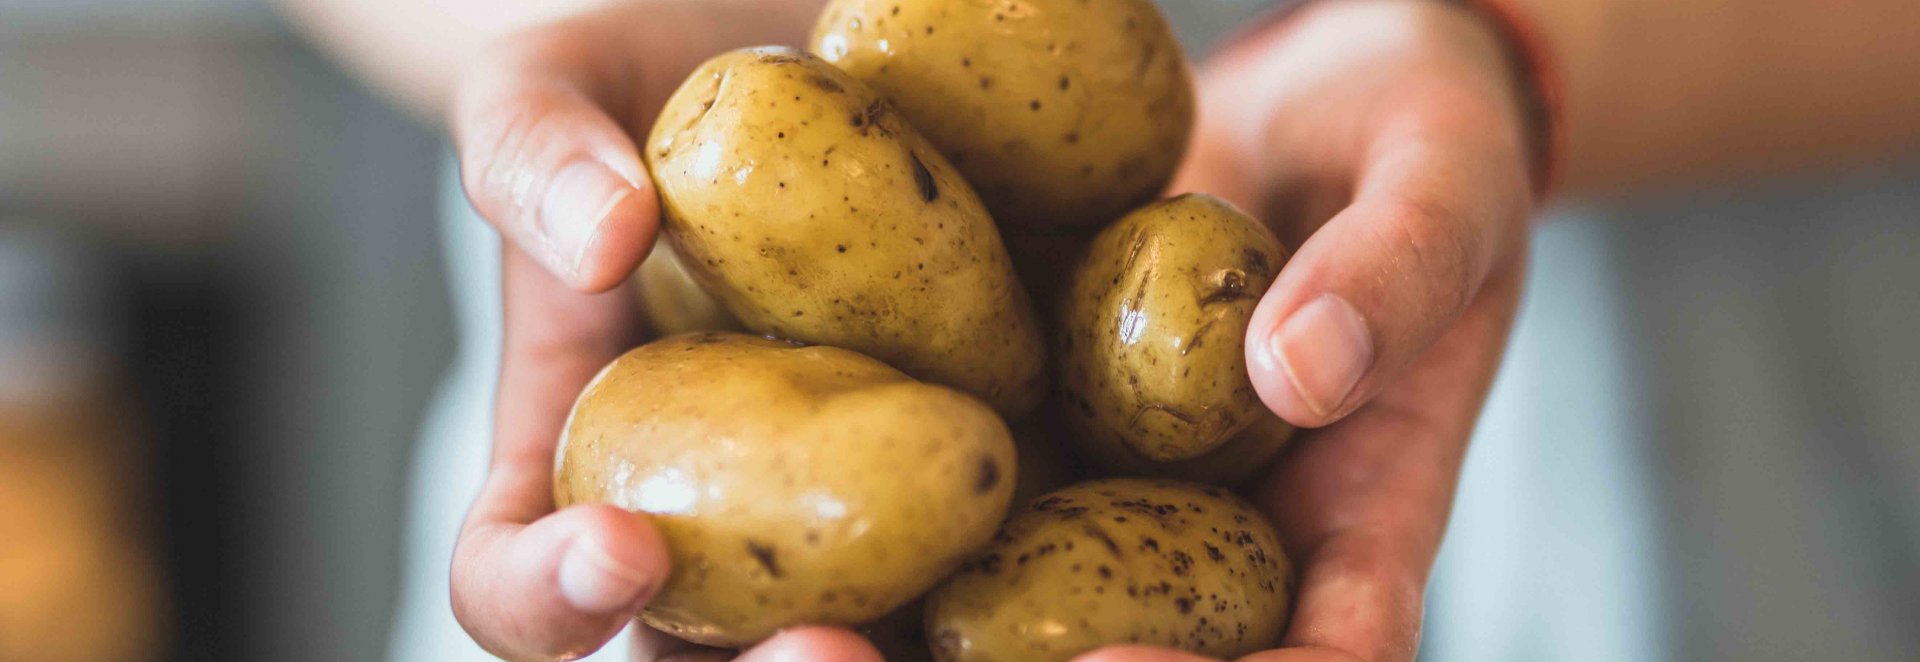 Který typ brambor využijete na salát nebo do bramboráku?